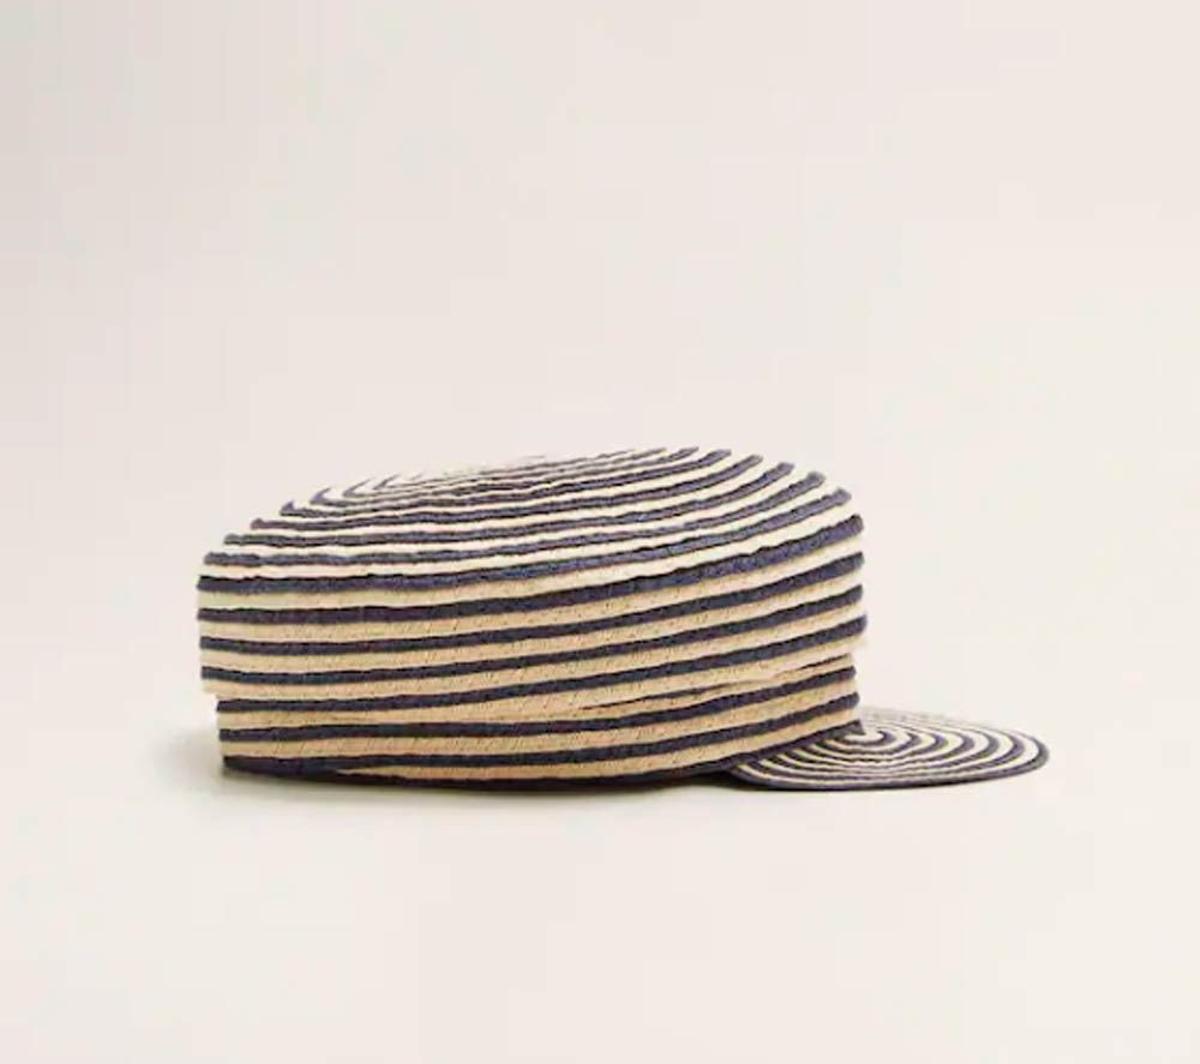 Sombrero de rafia de Mango Outlet. (Precio: 7,99 euros)